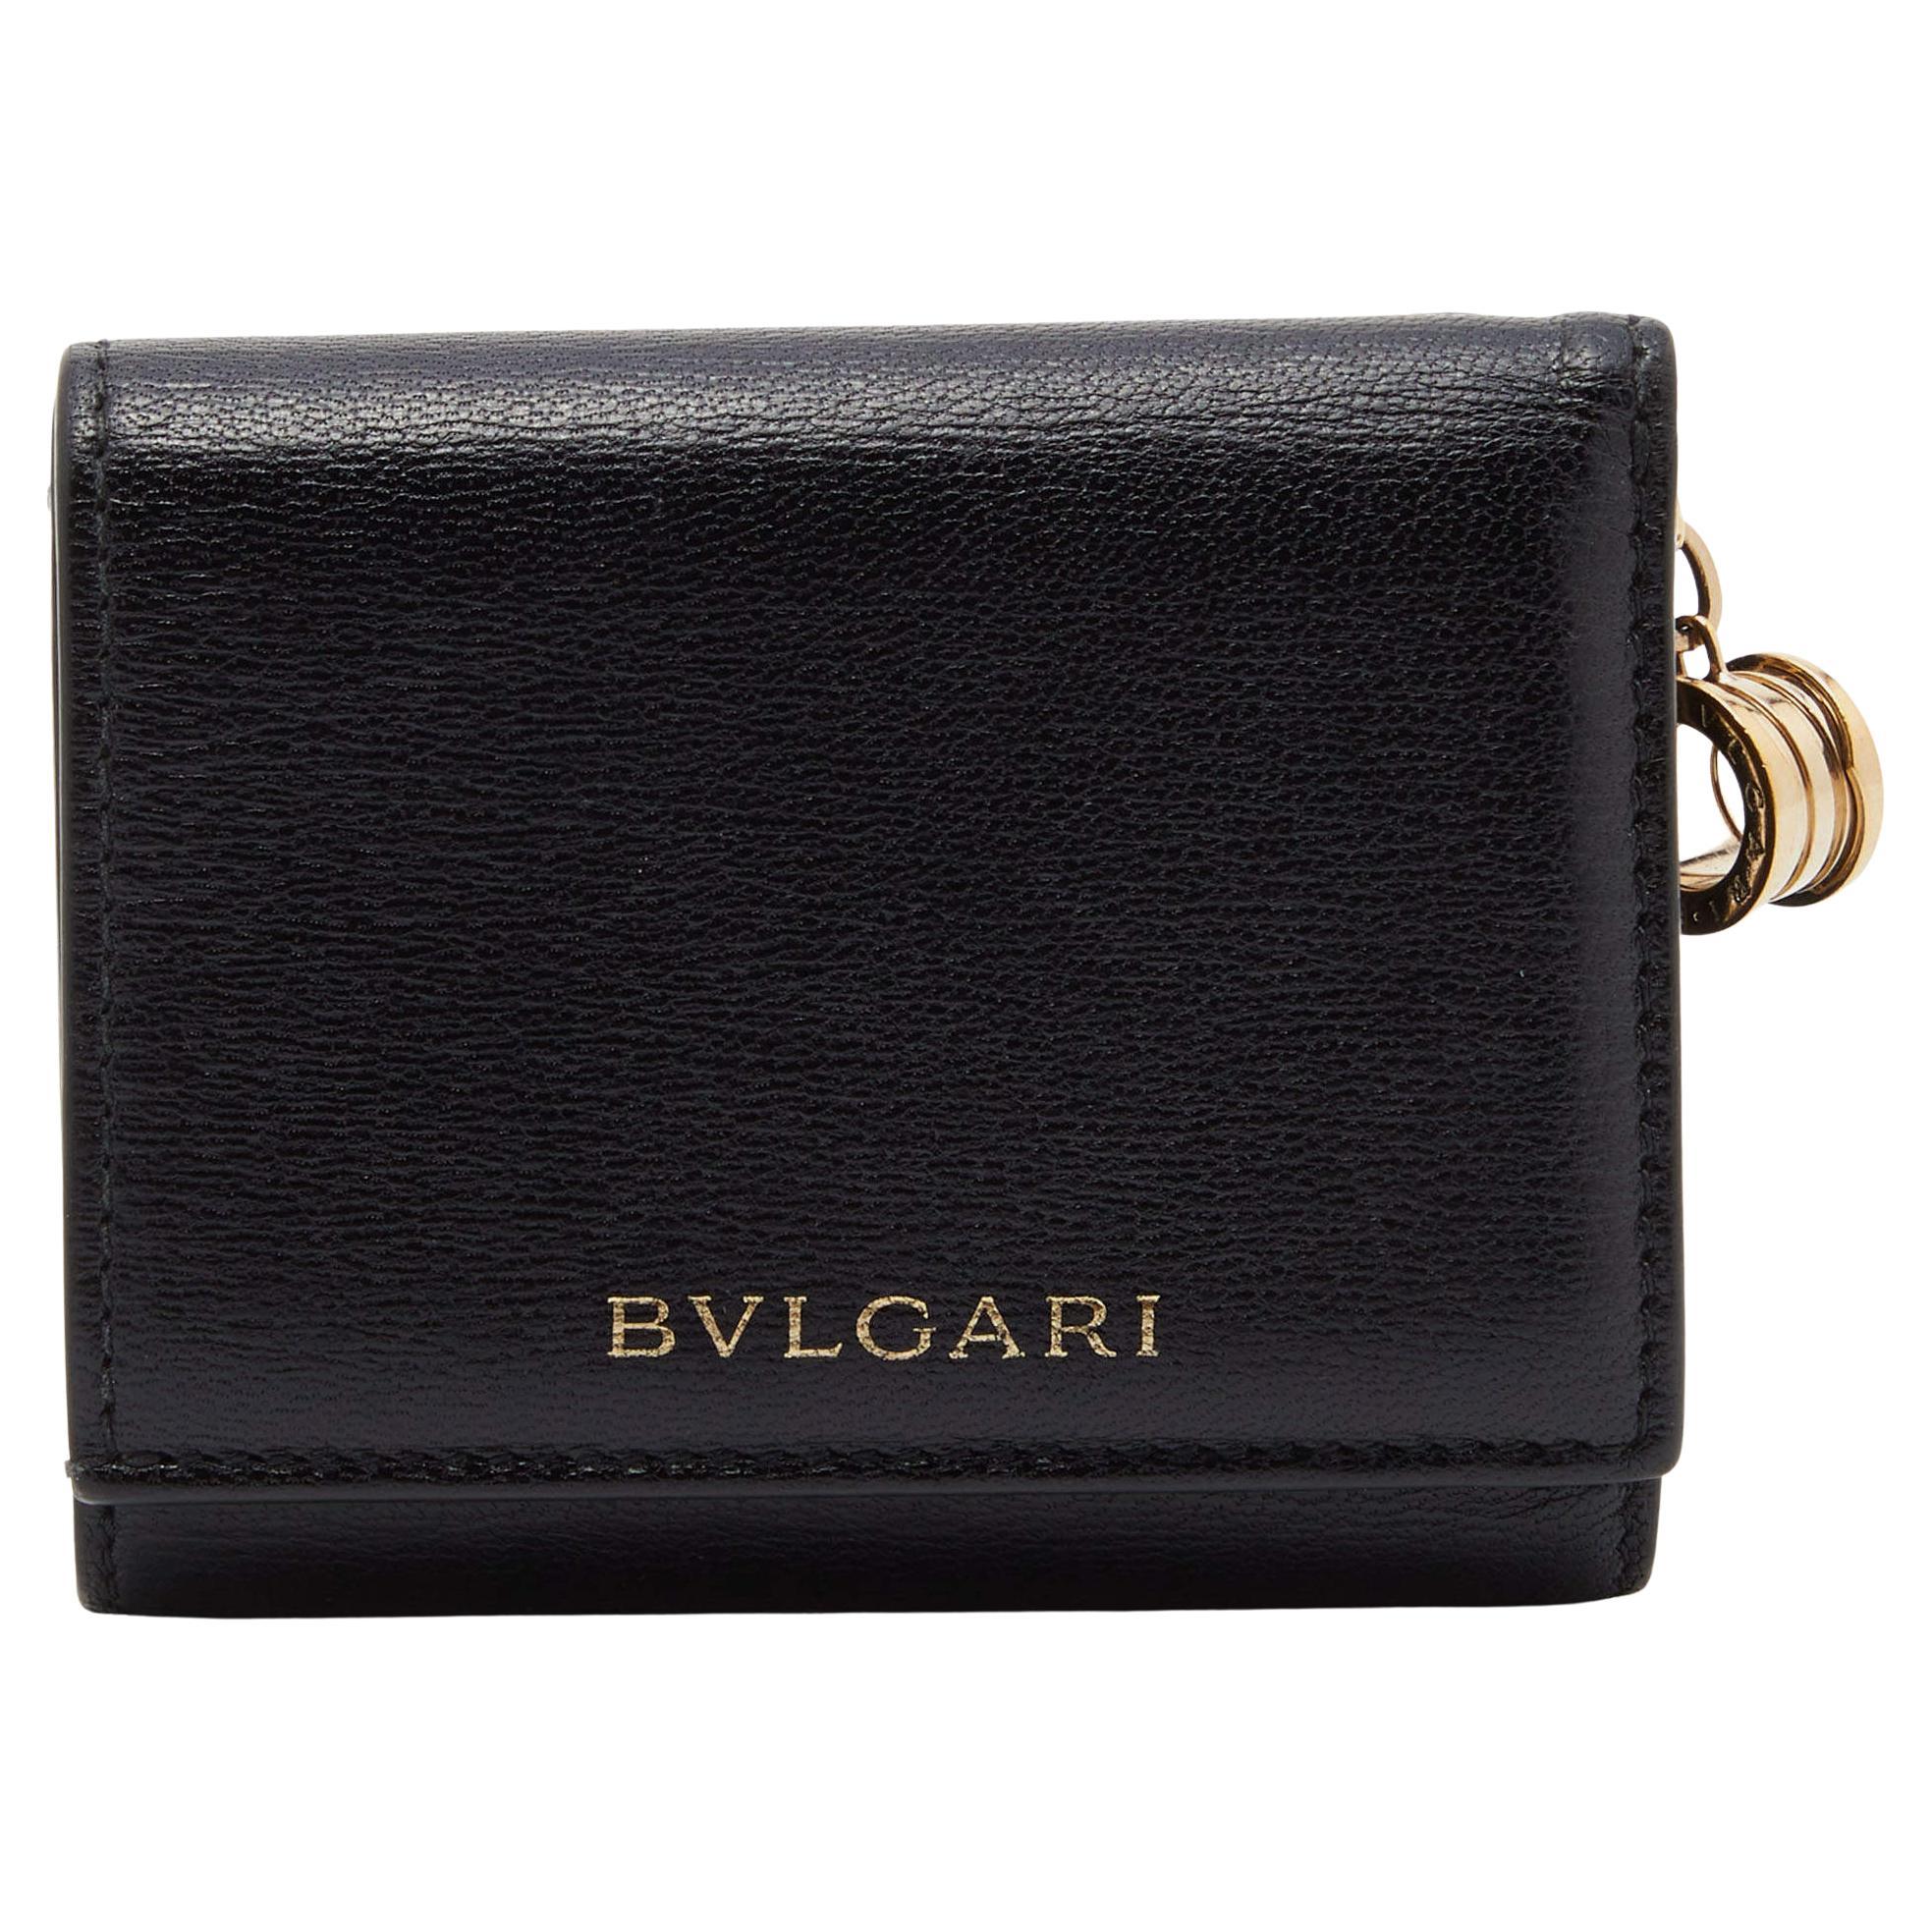 Bvlgari Black Leather B-Zero1 Trifold Wallet